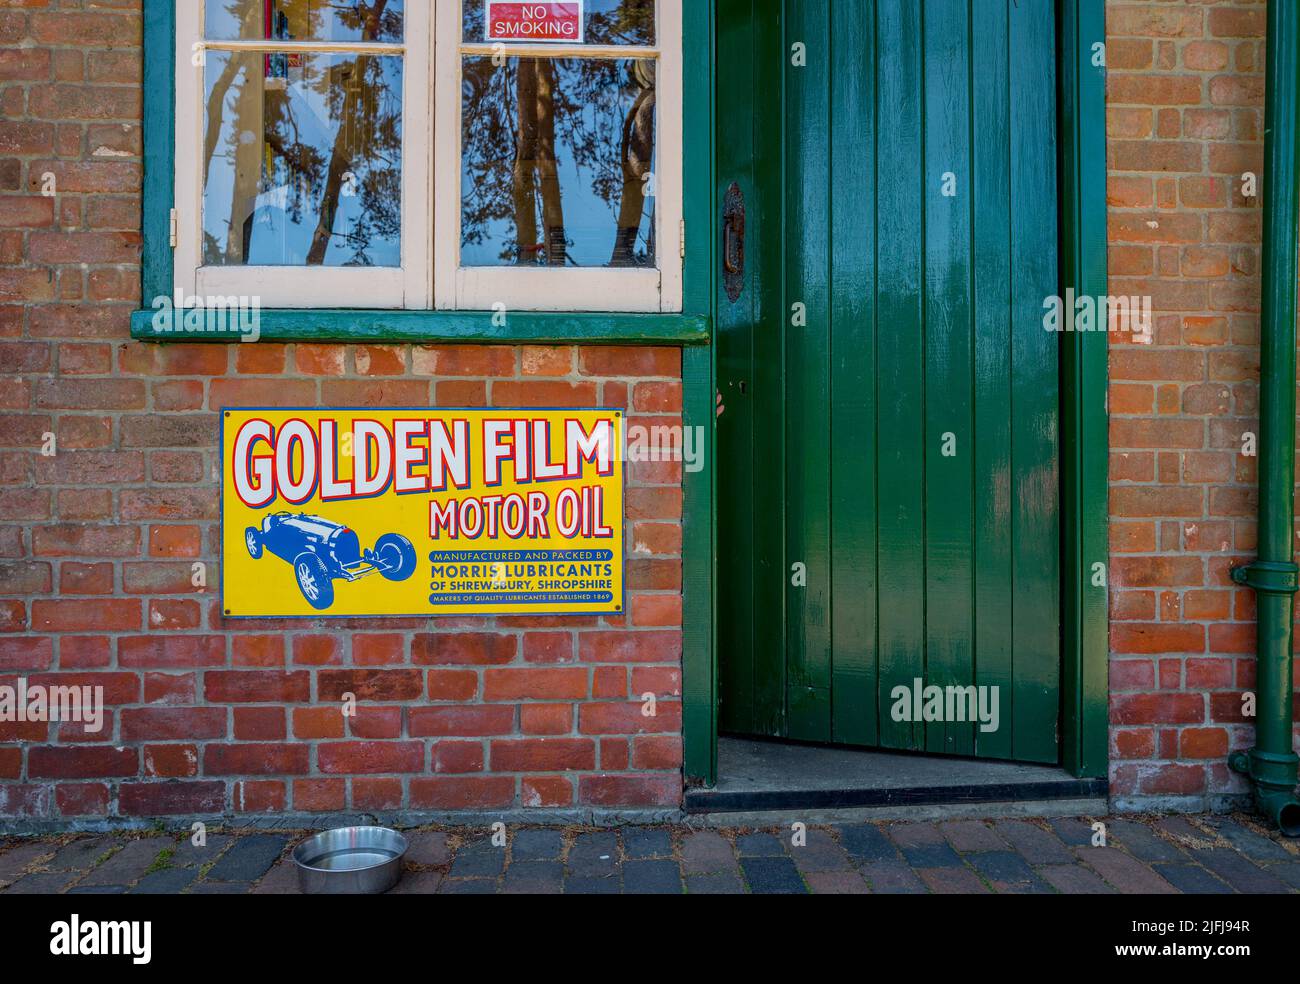 Vintage Morris Schmierstoffe Glodern Film Motoröl Emaille Schild an einem Backsteingebäude am holt Bahnhof Eisenbahnmuseum, holt, Norfolk angebracht Stockfoto